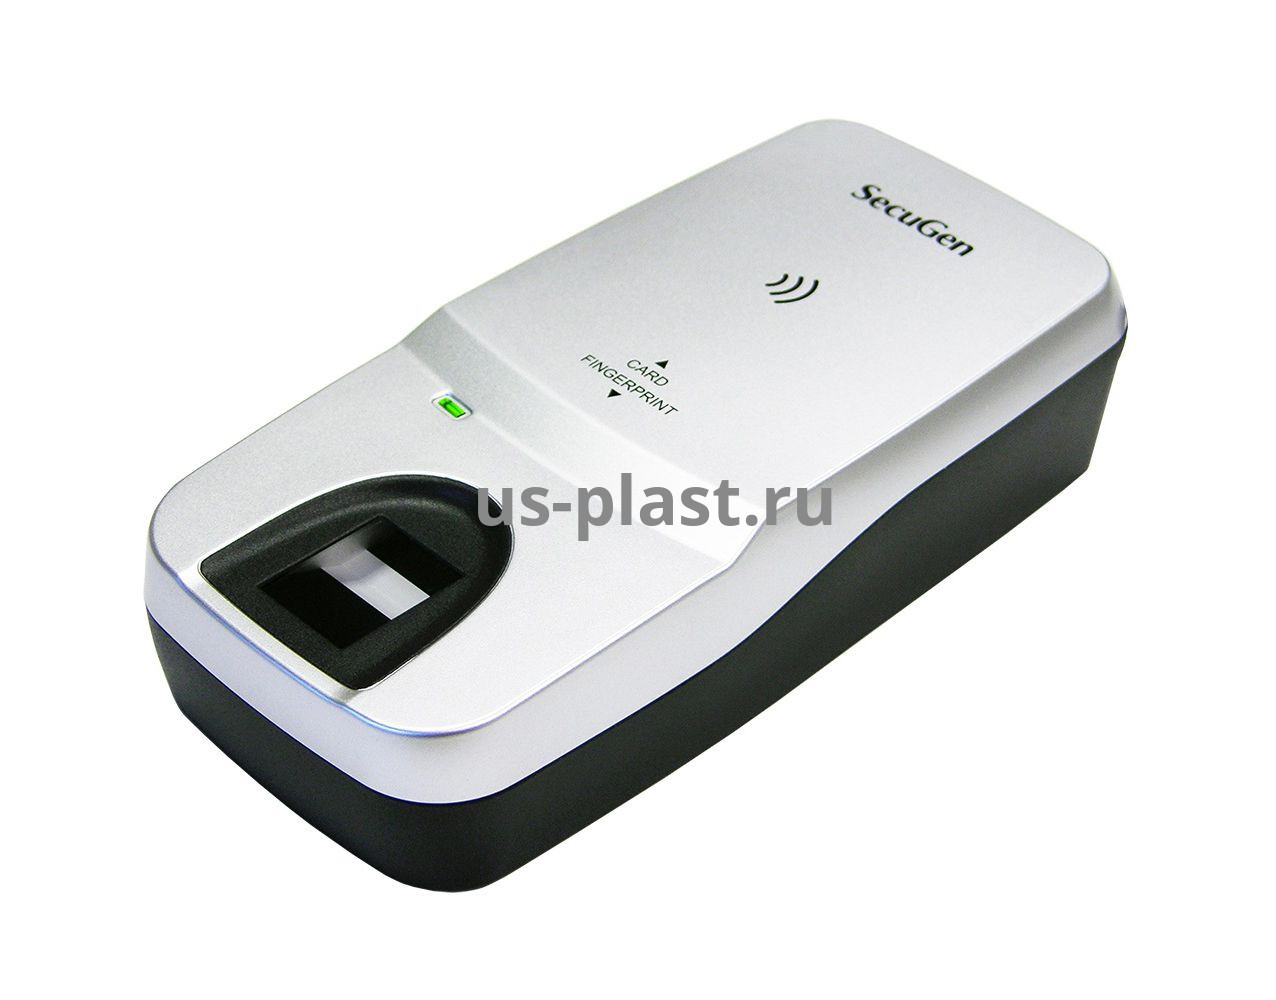 SecuGen Hamster Pro Duo CL (XU20CL), комбинированный считыватель отпечатков пальцев, NFC и бесконтактных смарт-карт